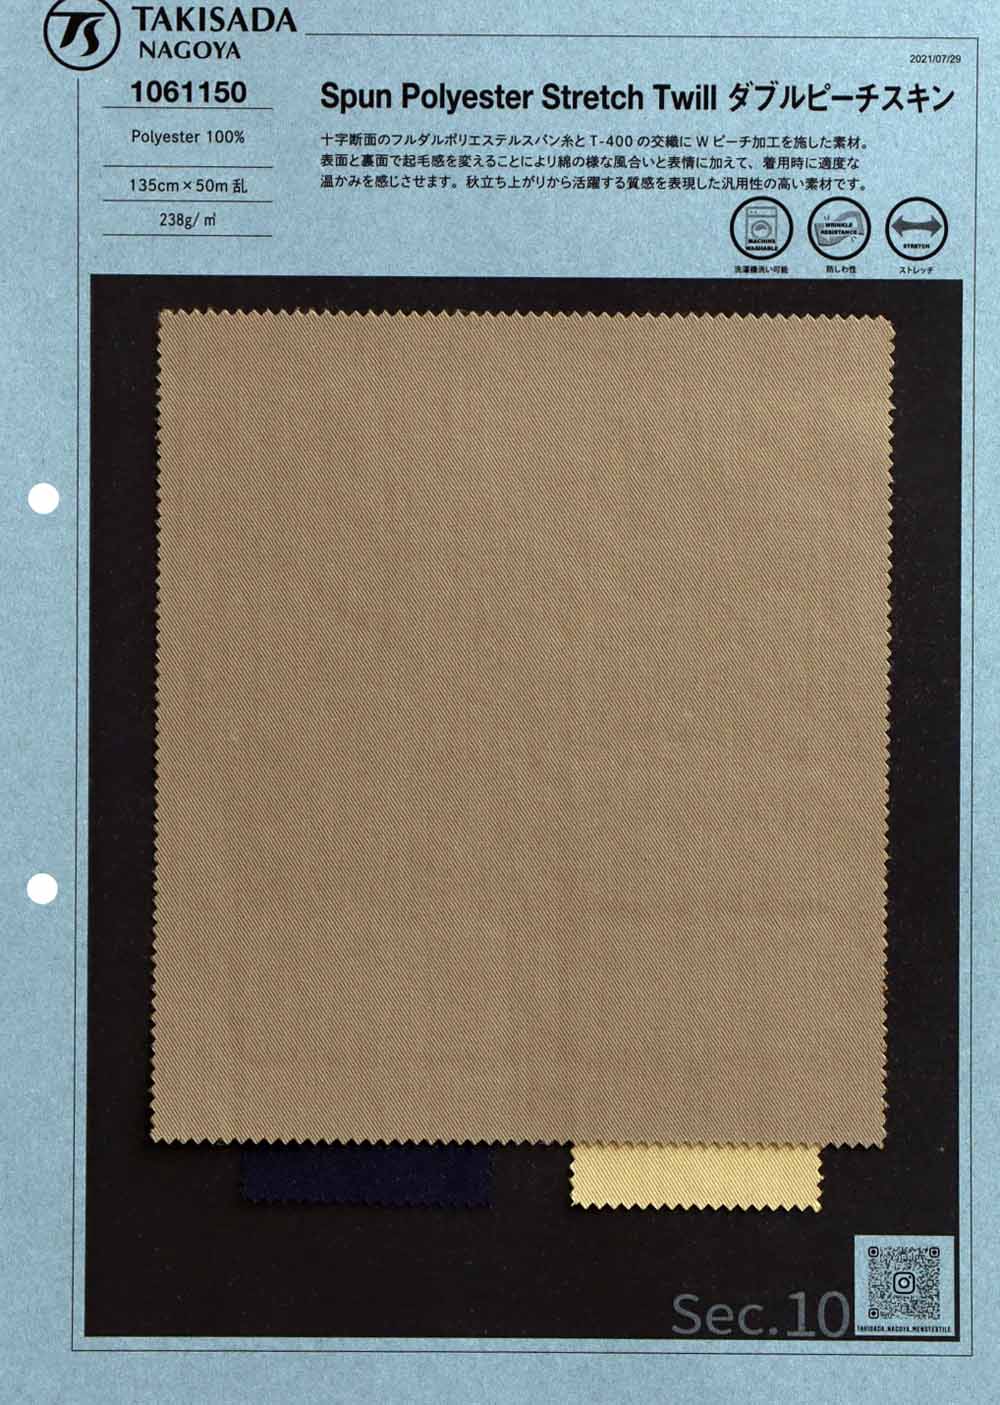 1061150 Sergé Extensible En Polyester Filé Double Peau De Pêche[Fabrication De Textile] Takisada Nagoya